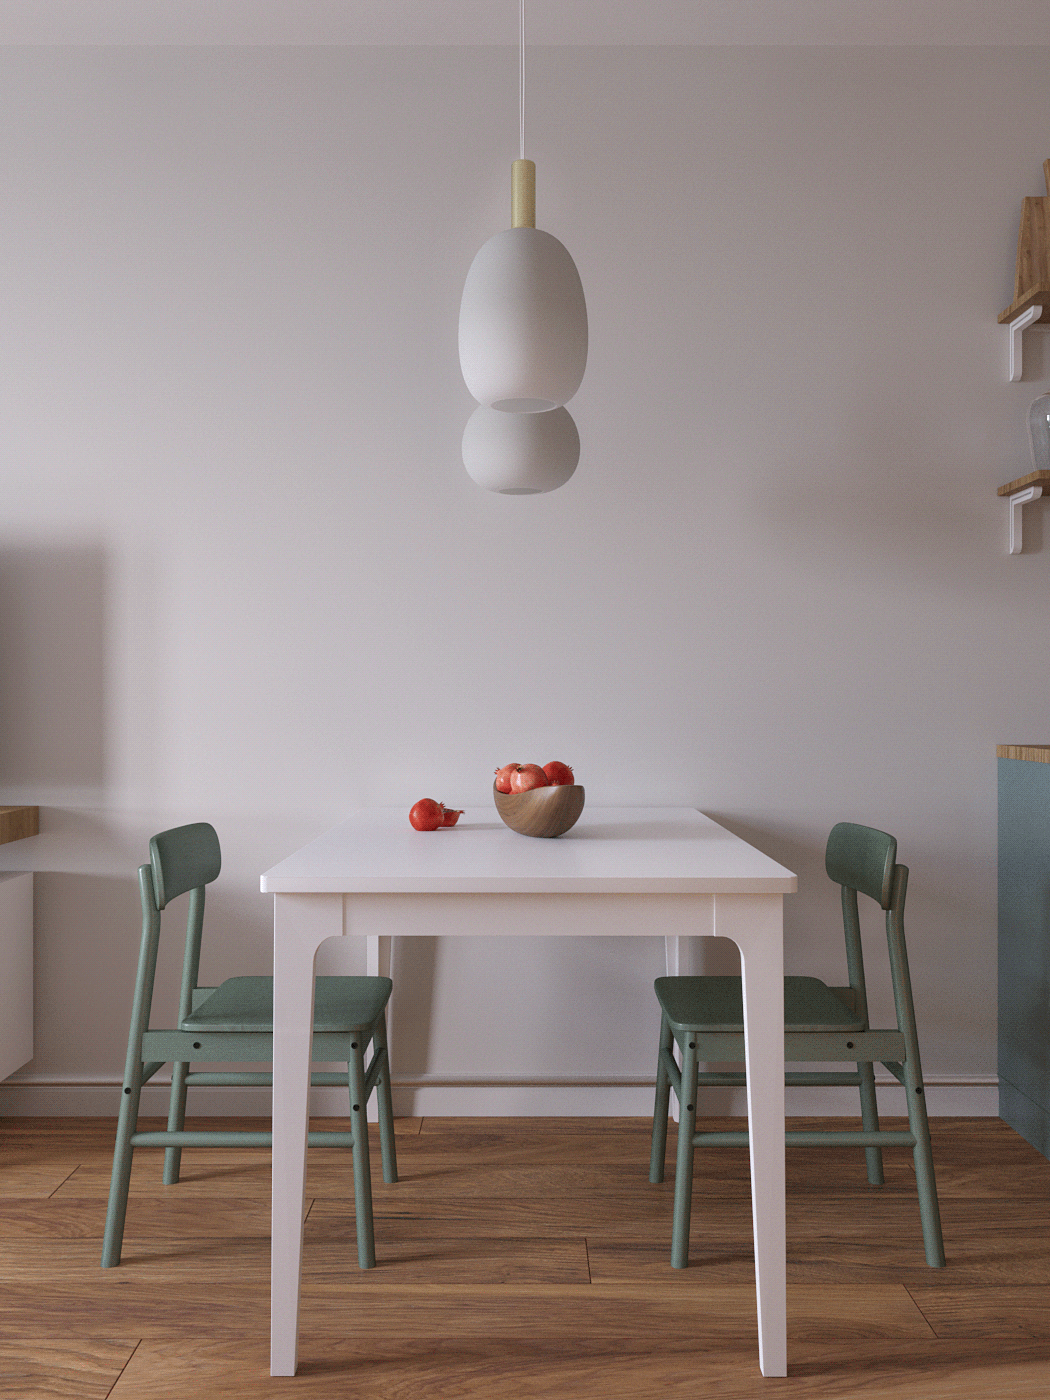 apartment bedroom color cosy ikea kidroom kitchen Modern Design Moscow Scandinavian